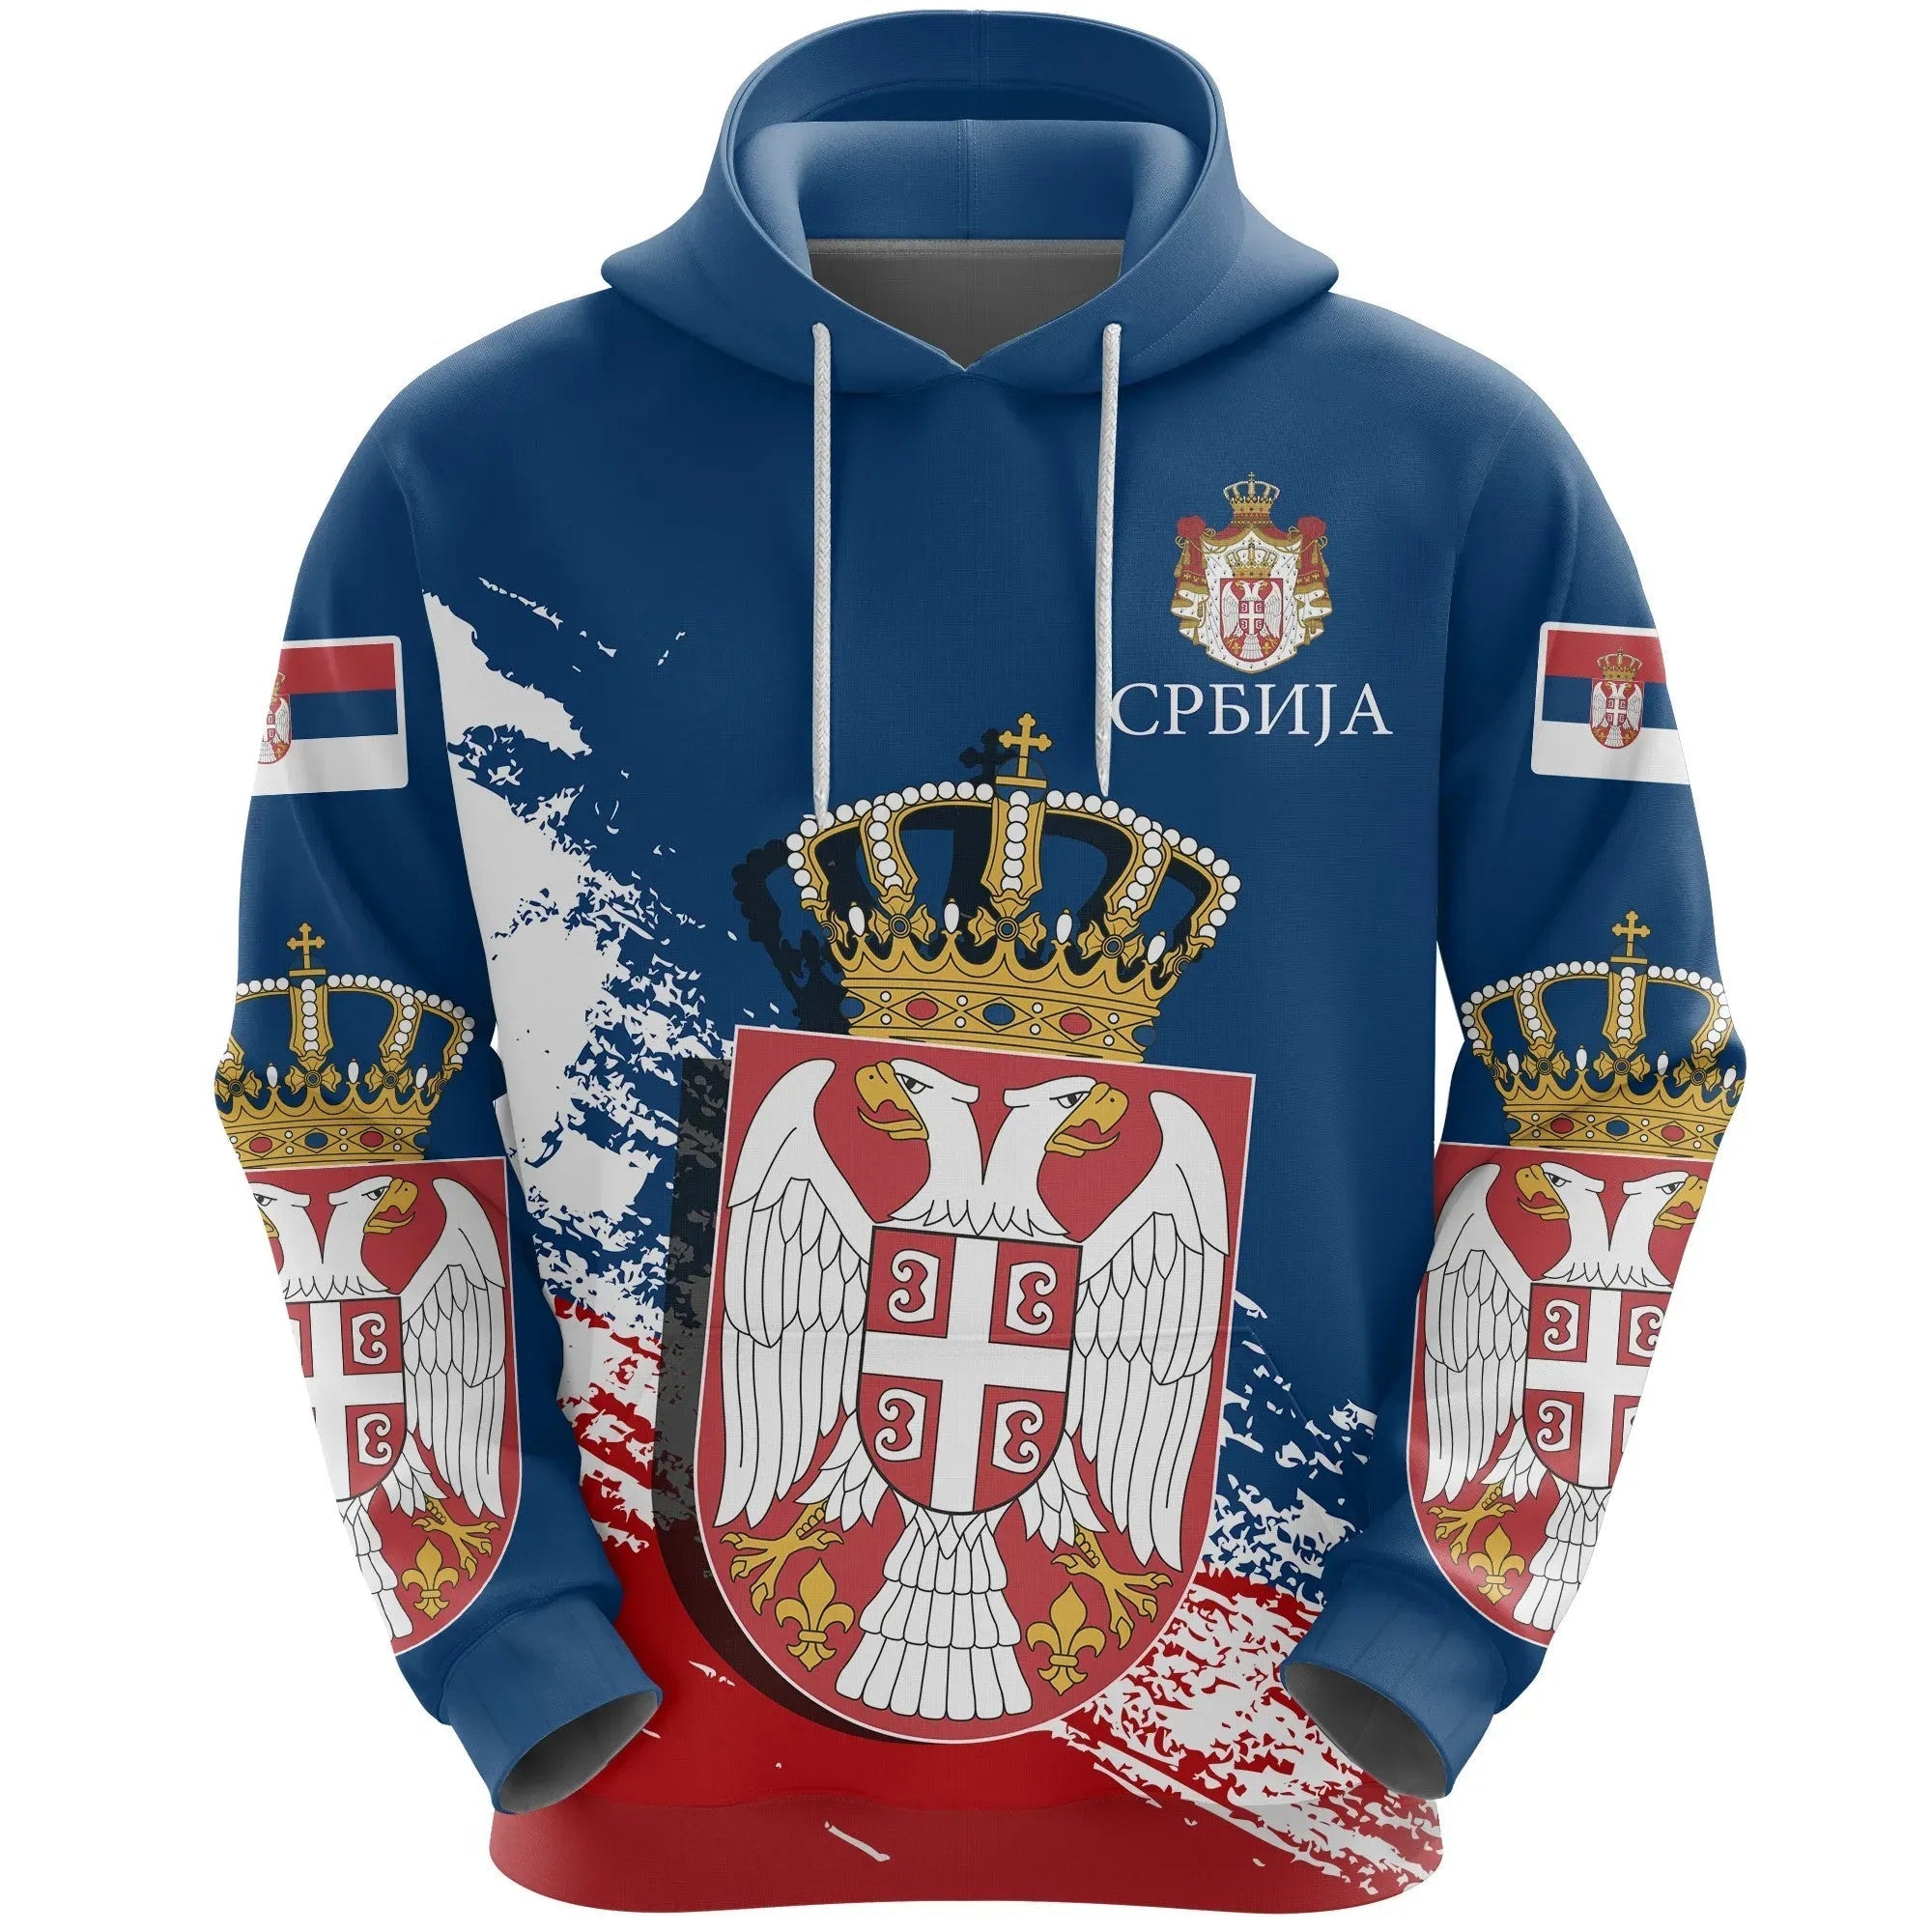 serbia-special-hoodie-blue-version